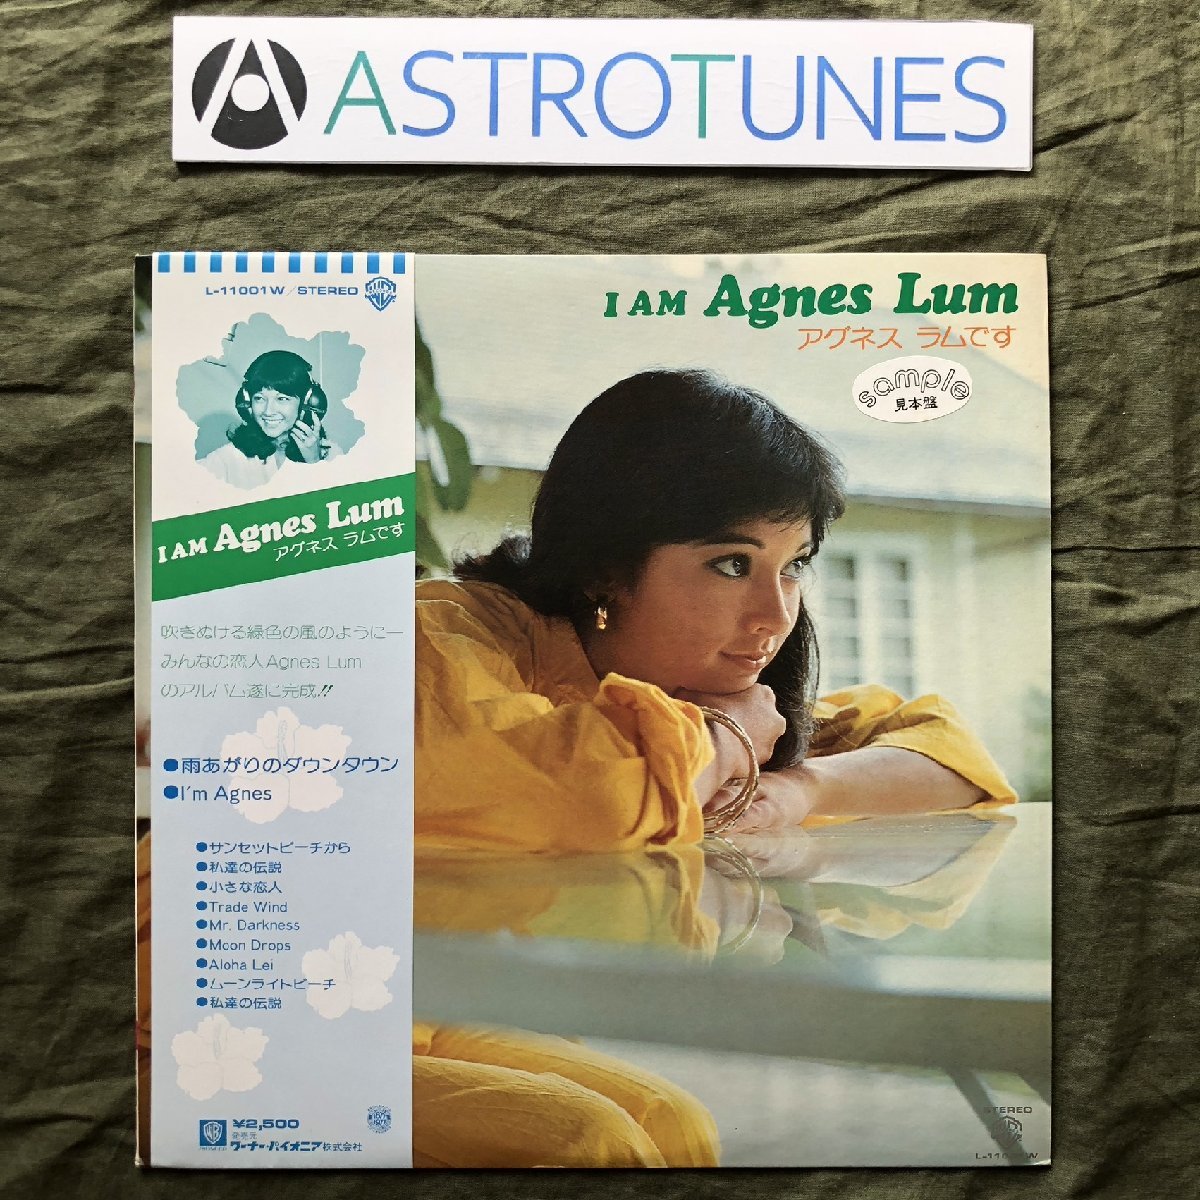 无划痕, 良好的条件, 不作为产品销售, 宣传记录, 1977, 艾格尼丝·卢姆, LP 唱片, 我是 Agnes Lu, 带腰带, 8p 照片书, 岩石, 流行音乐, 一排, 其他的